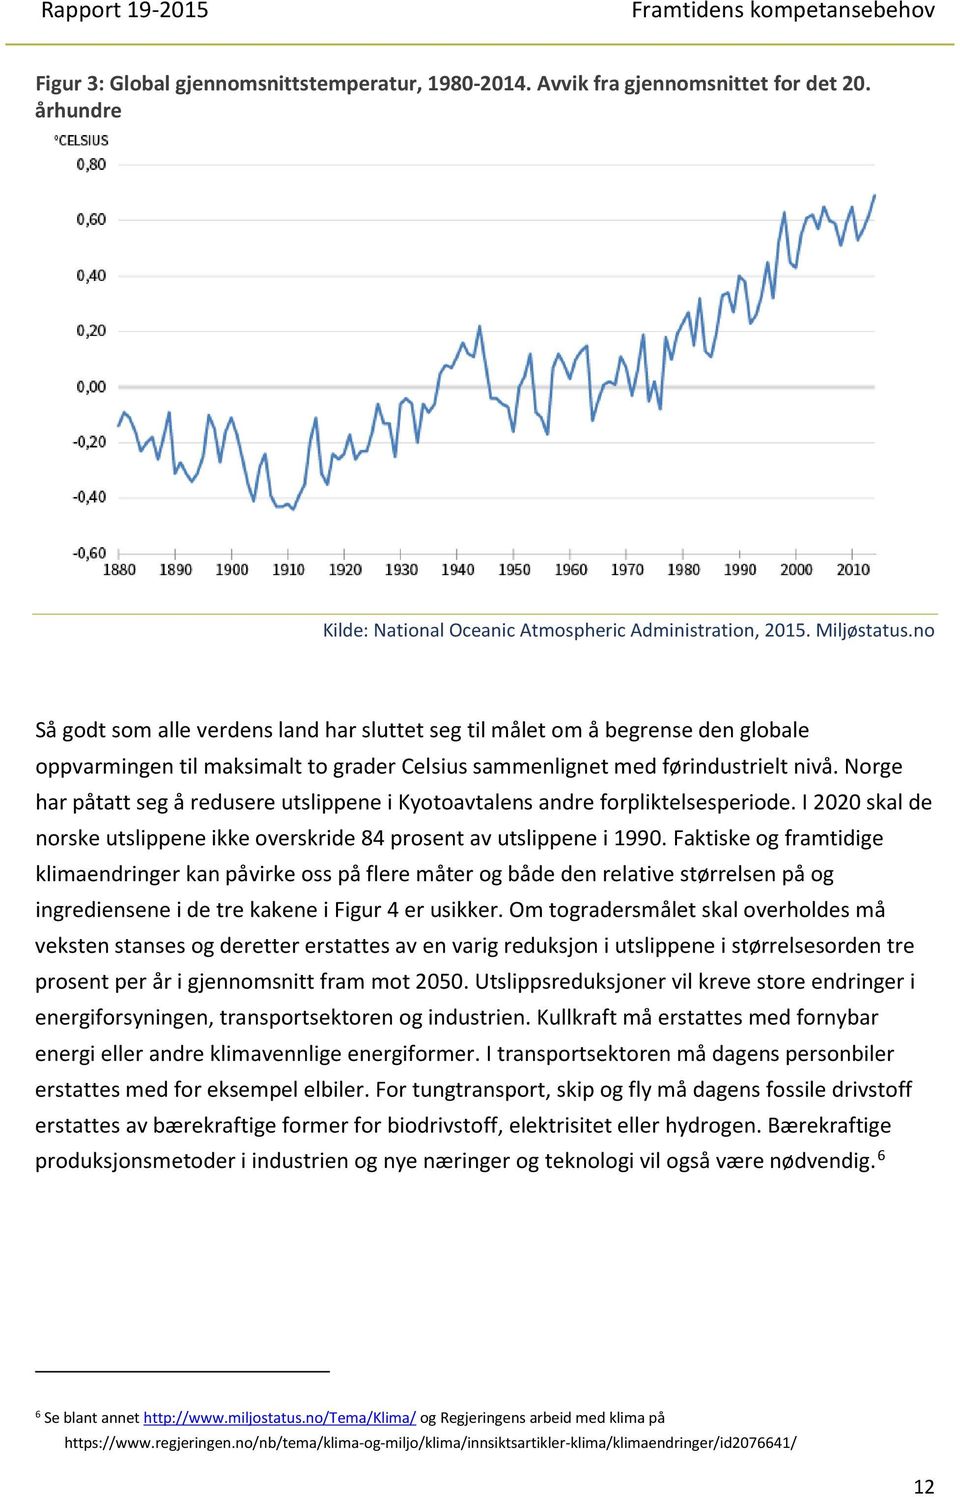 Norge har påtatt seg å redusere utslippene i Kyotoavtalens andre forpliktelsesperiode. I 2020 skal de norske utslippene ikke overskride 84 prosent av utslippene i 1990.